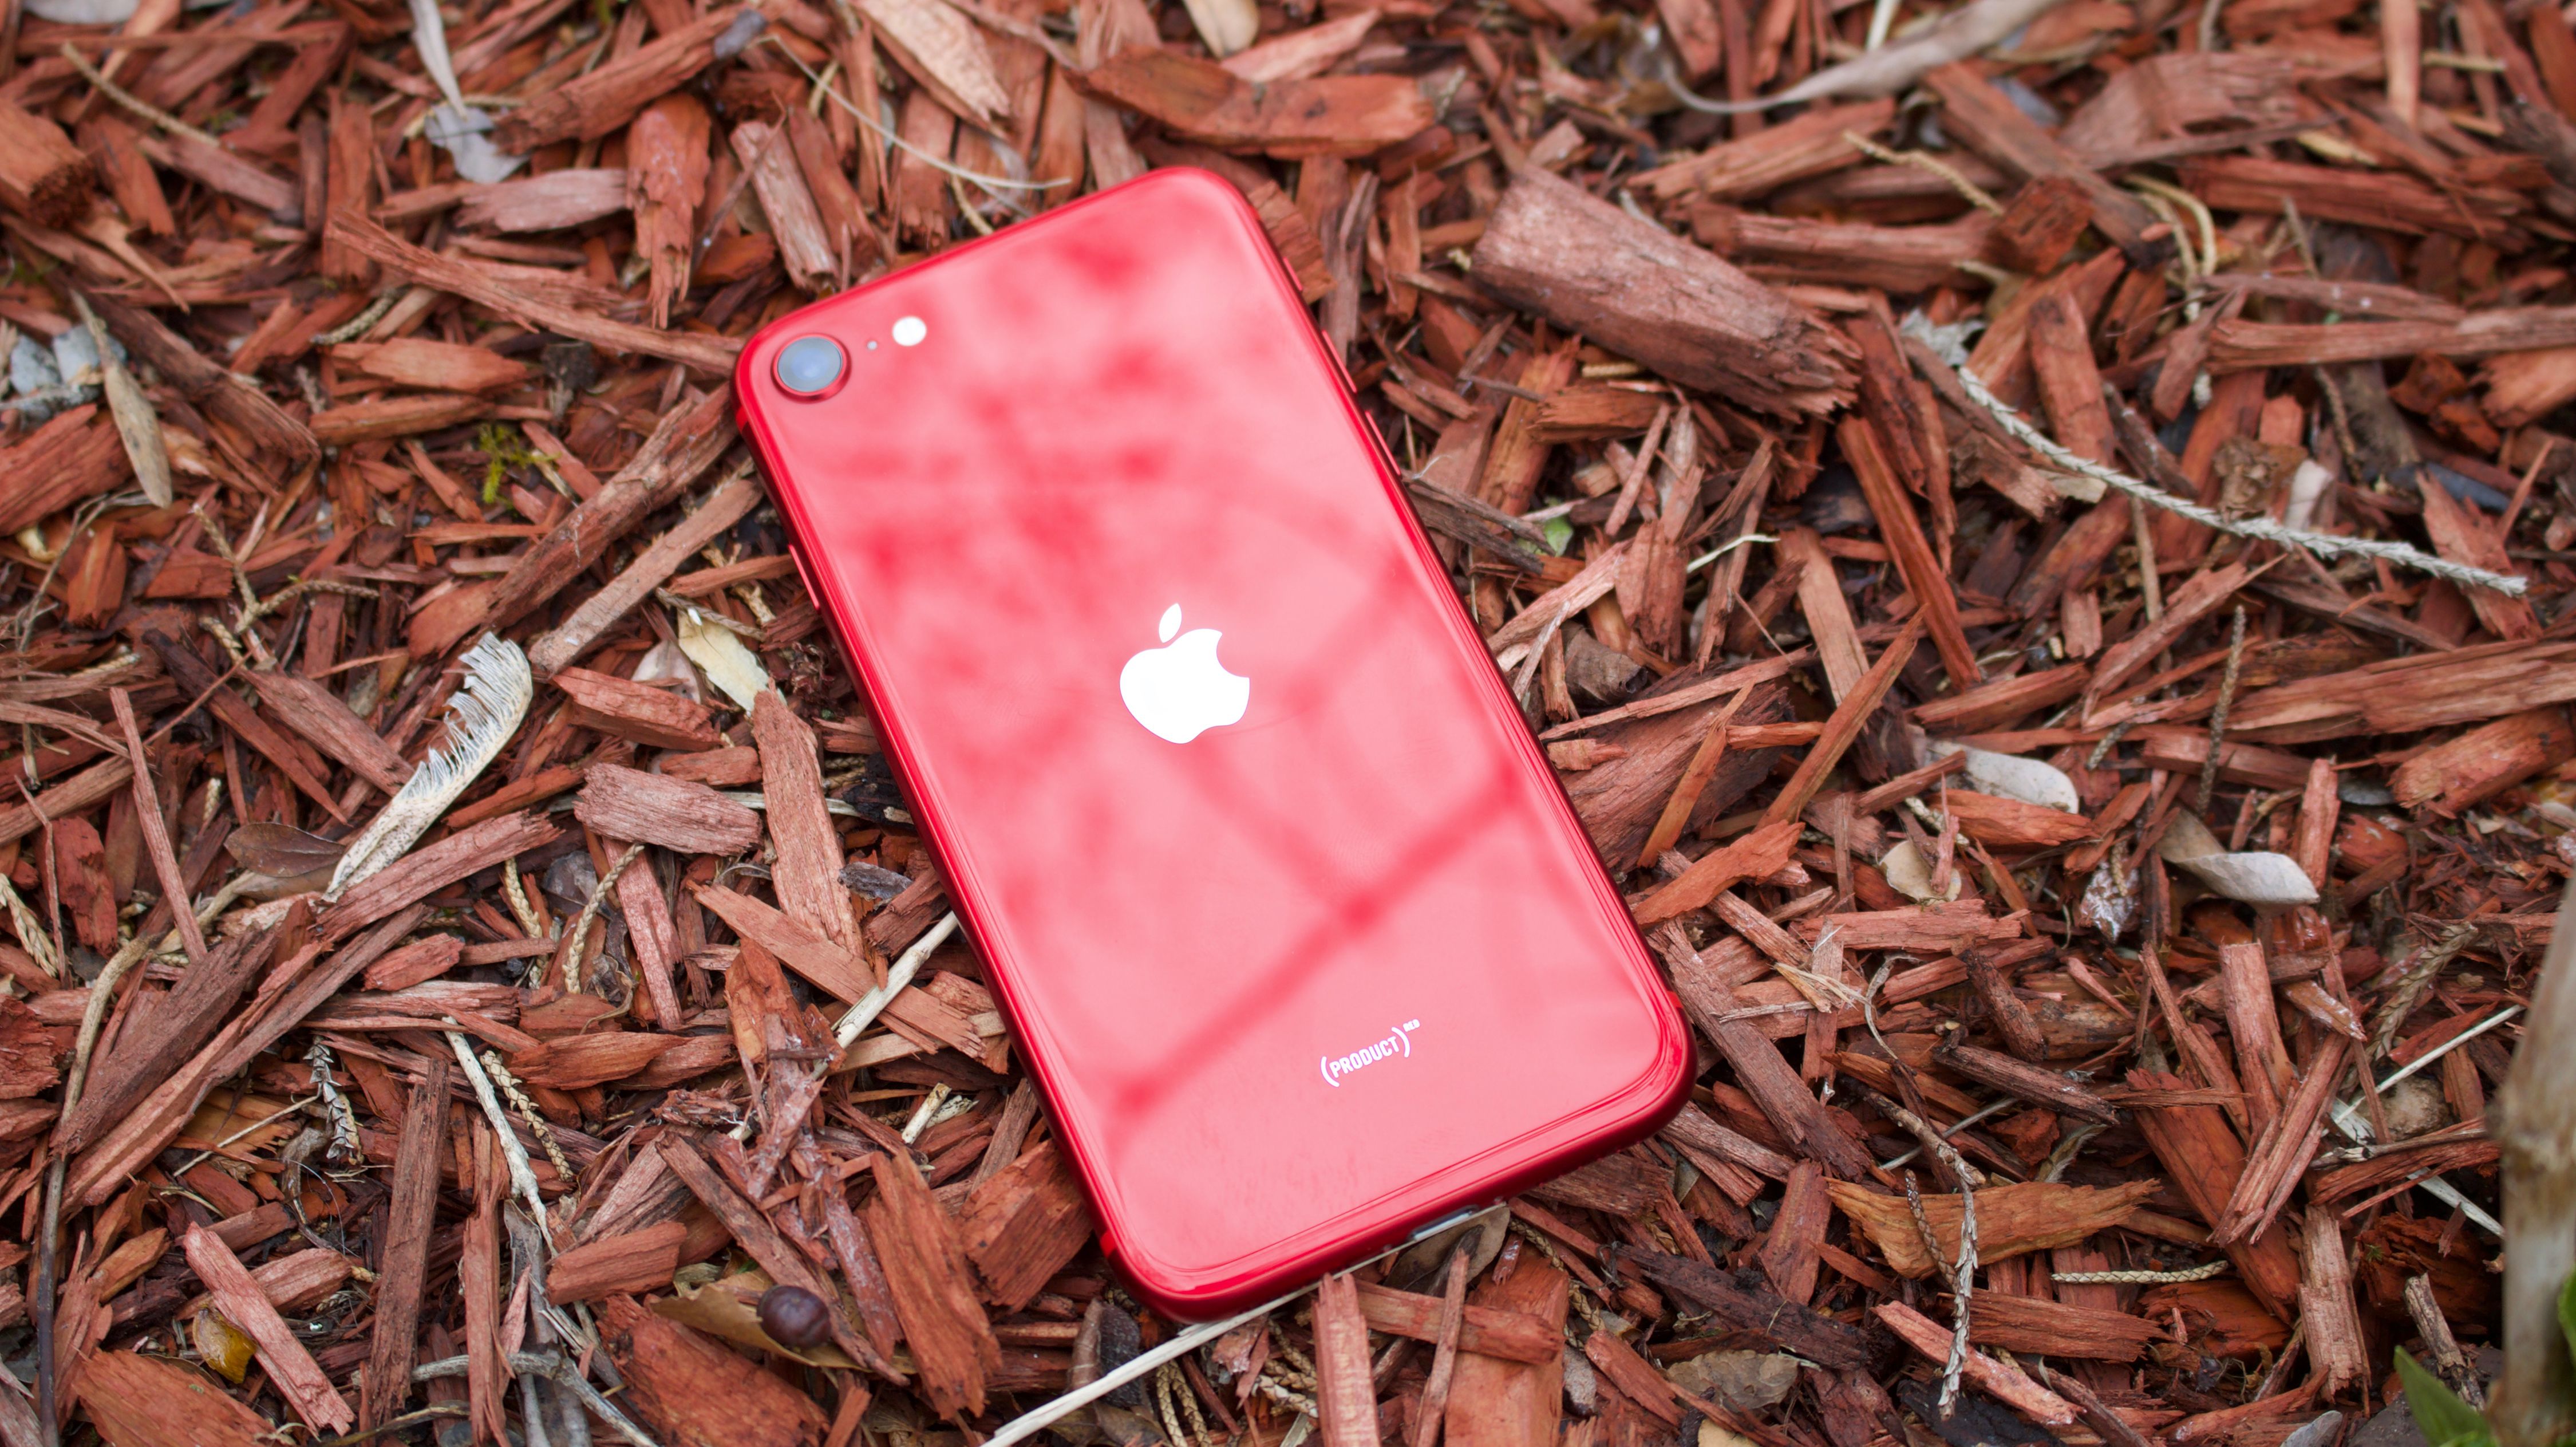 hoofdkussen sponsor Beperkingen iPhone SE 2020 Review: Apple's $399 iPhone brings unprecedented value | CNN  Underscored